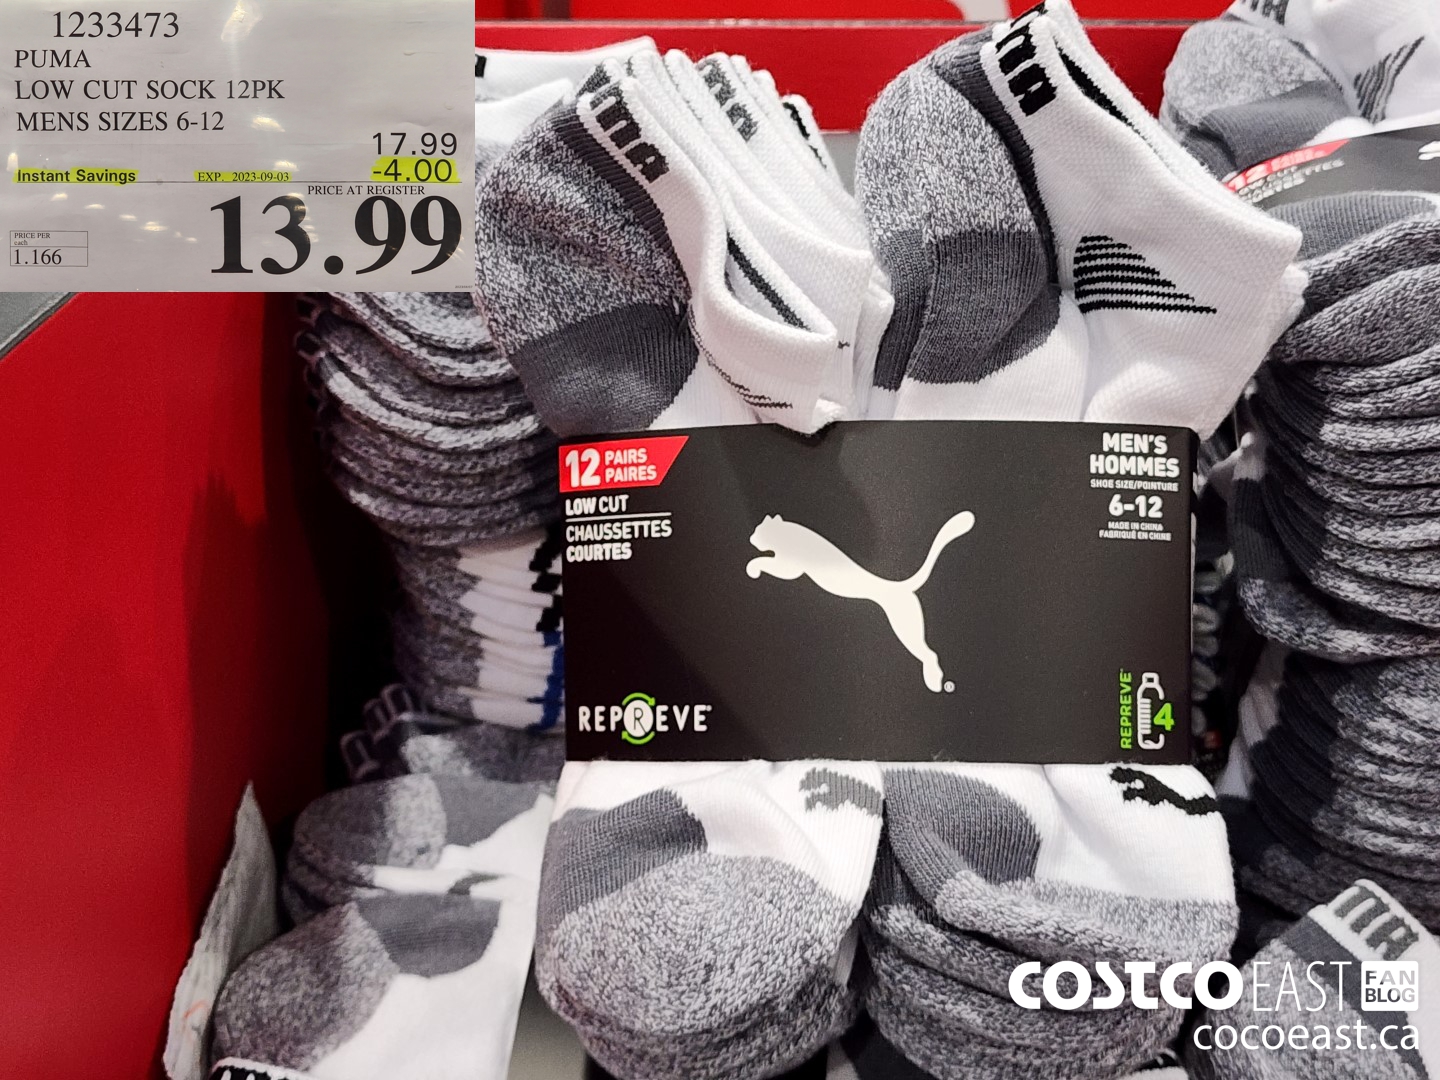 Puma men's low-cut socks offer at Costco